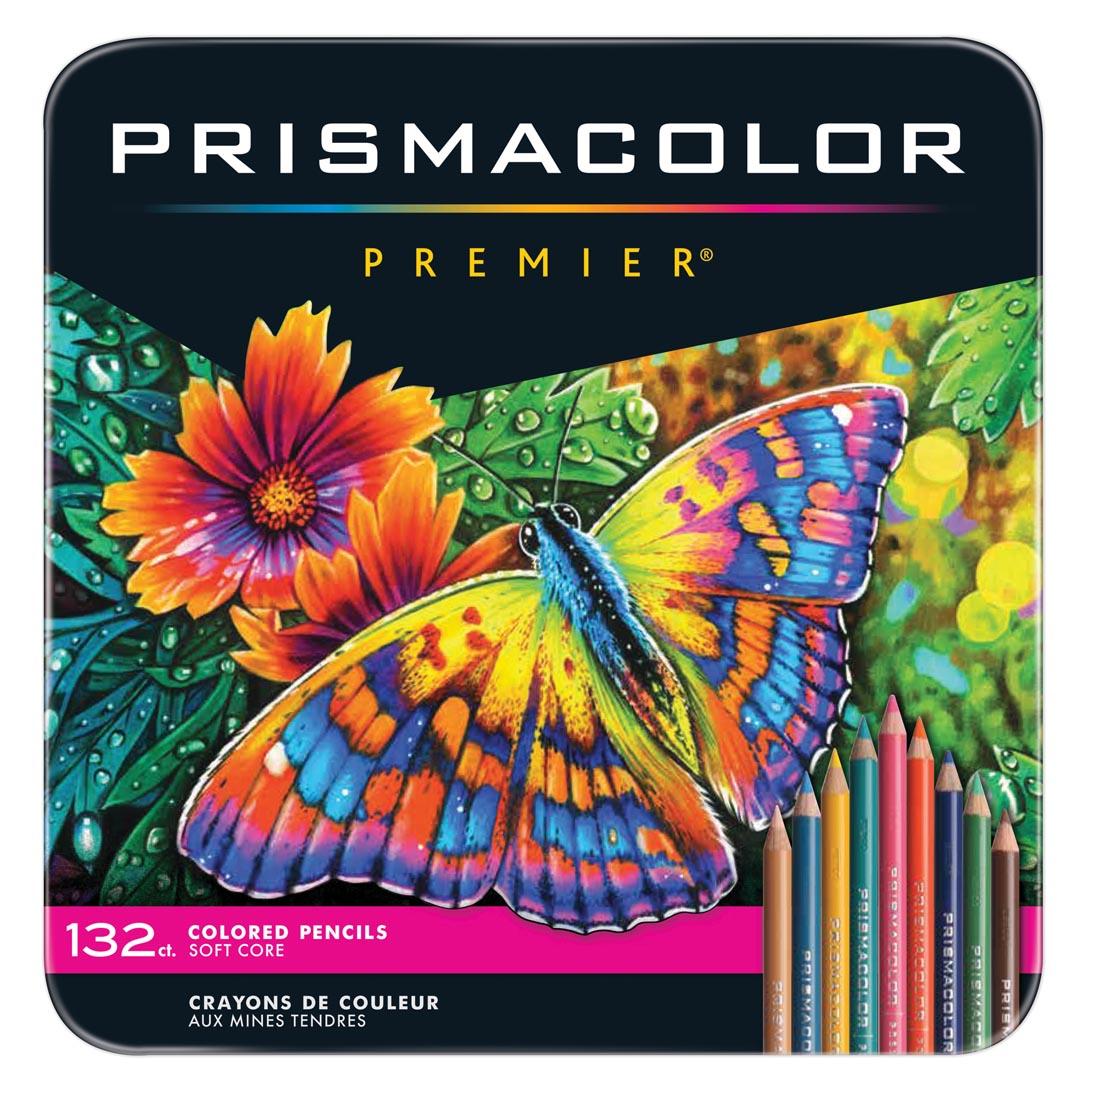 Prismacolor Premier Colored Pencils 132-Color Set